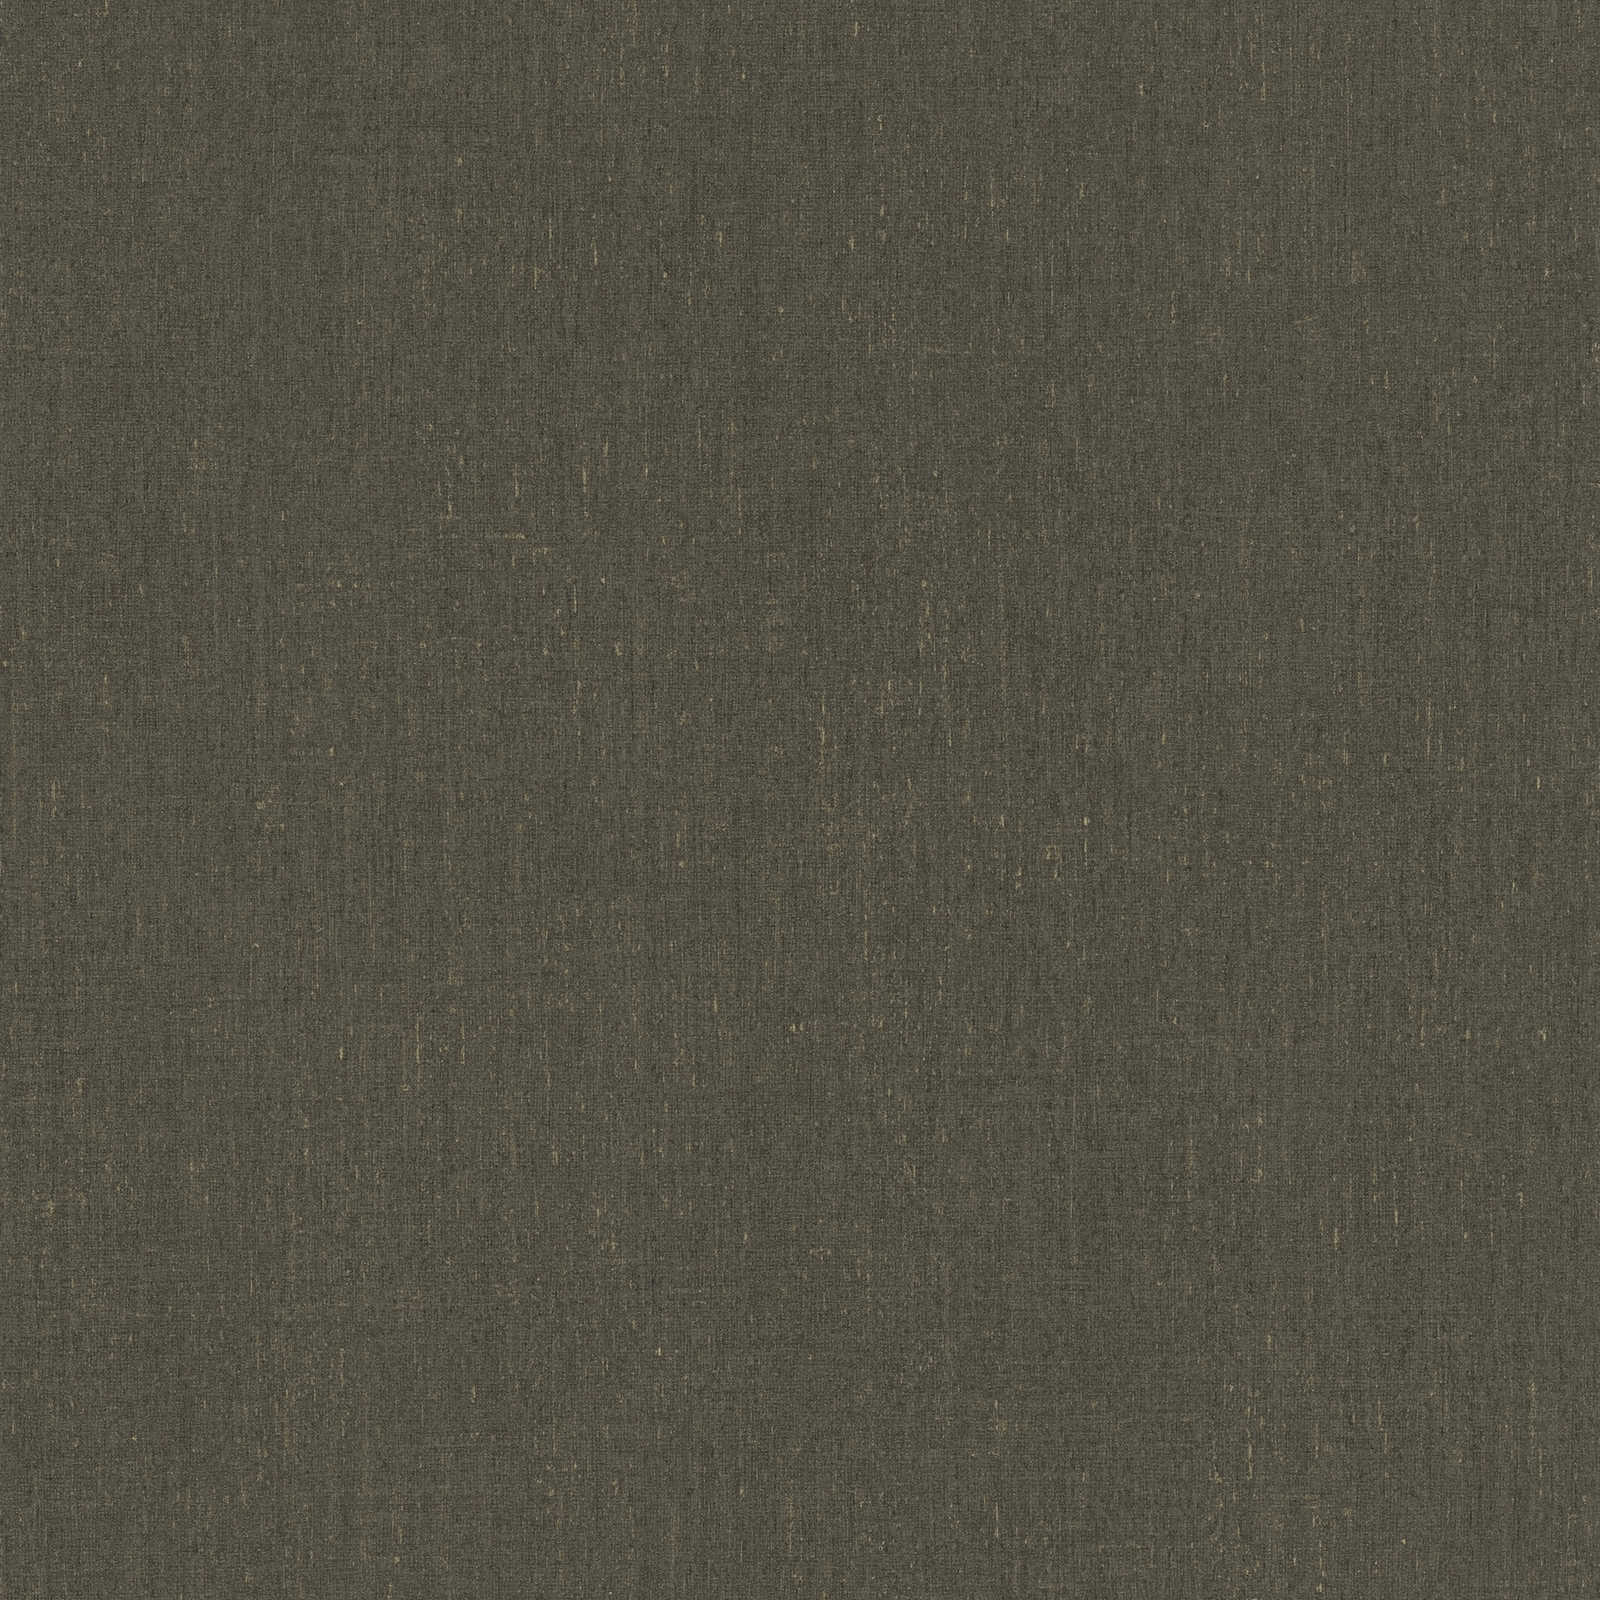 Papel pintado marrón oscuro liso con detalle de estructura - marrón, gris
